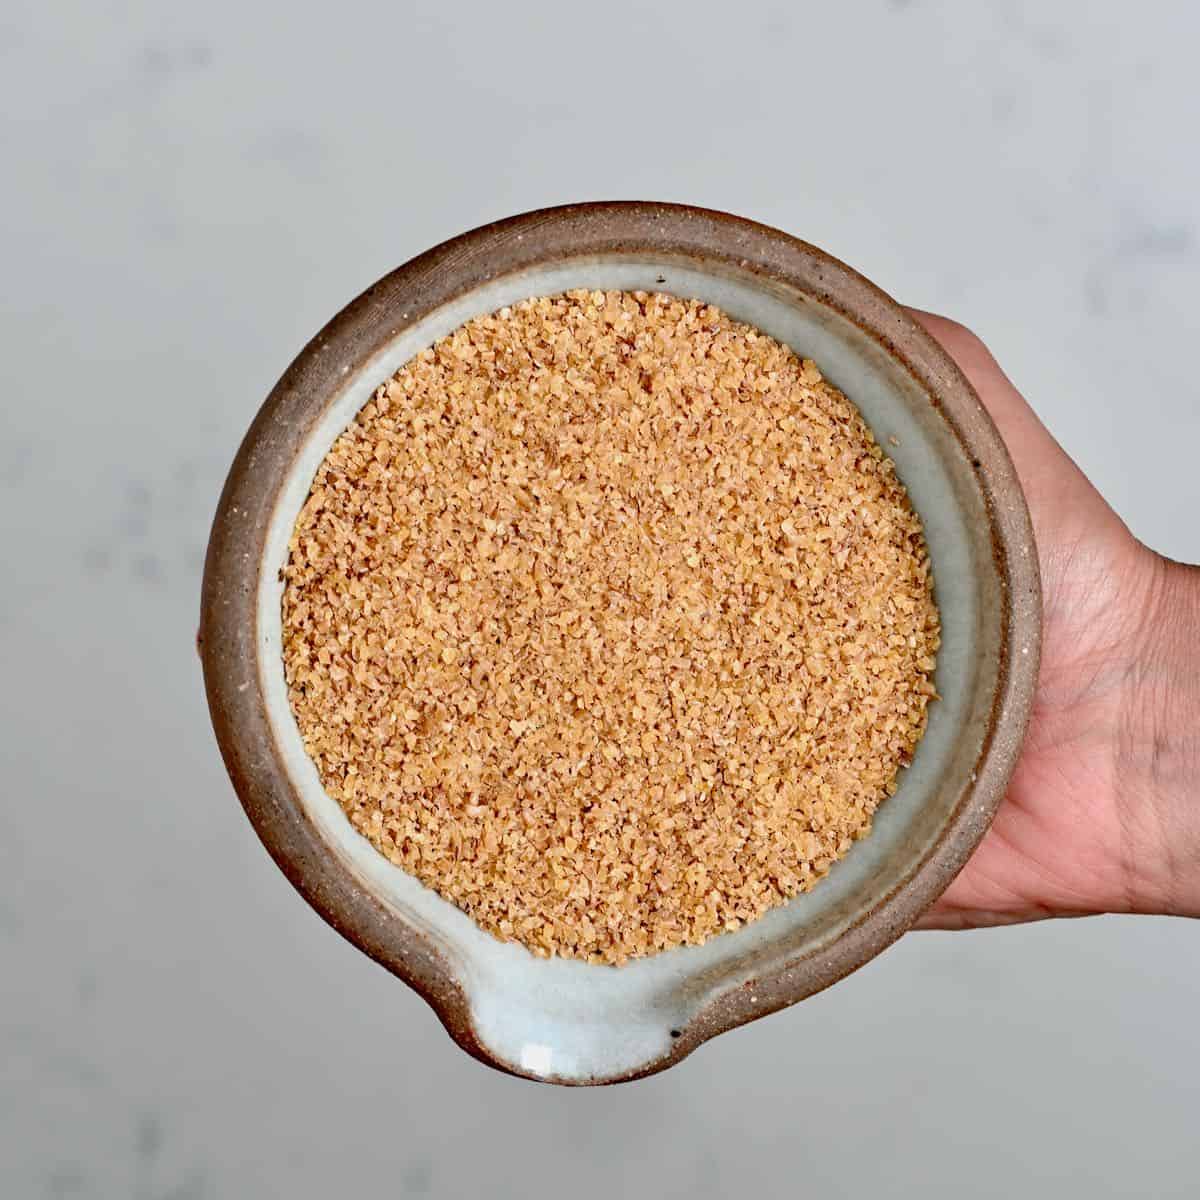 How to Make Bulgur Wheat at Home -